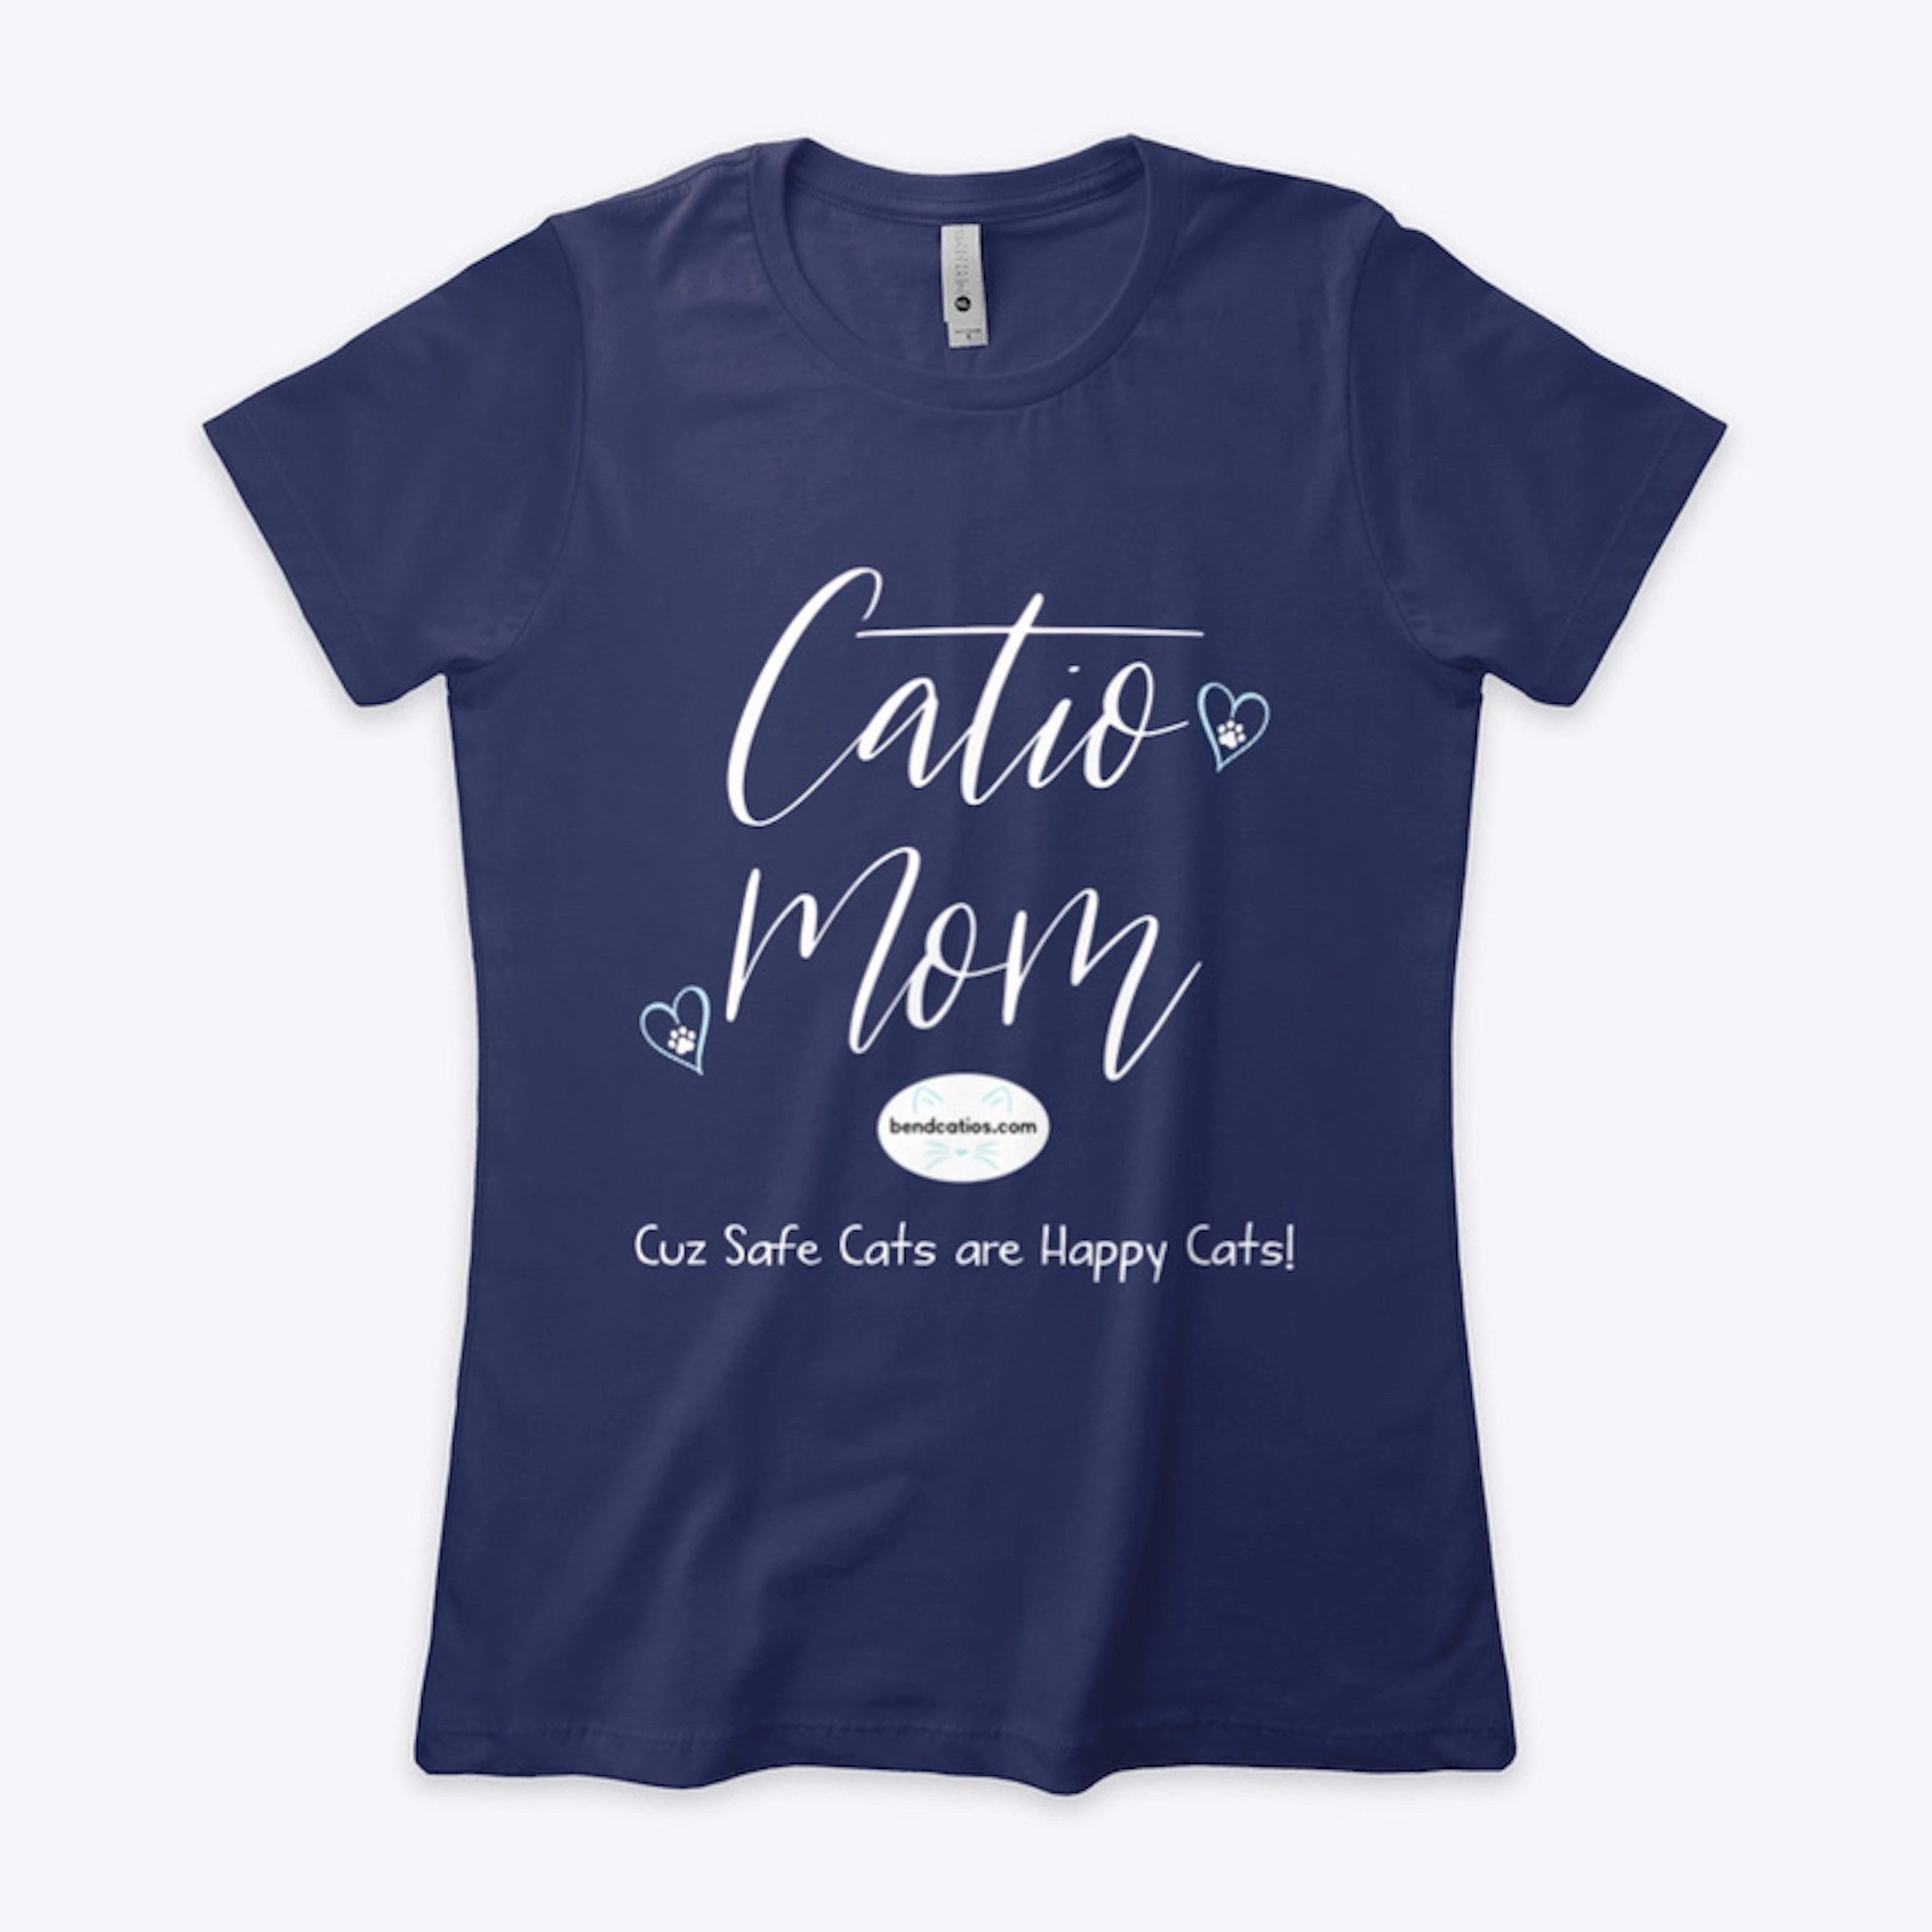 Catio Mom